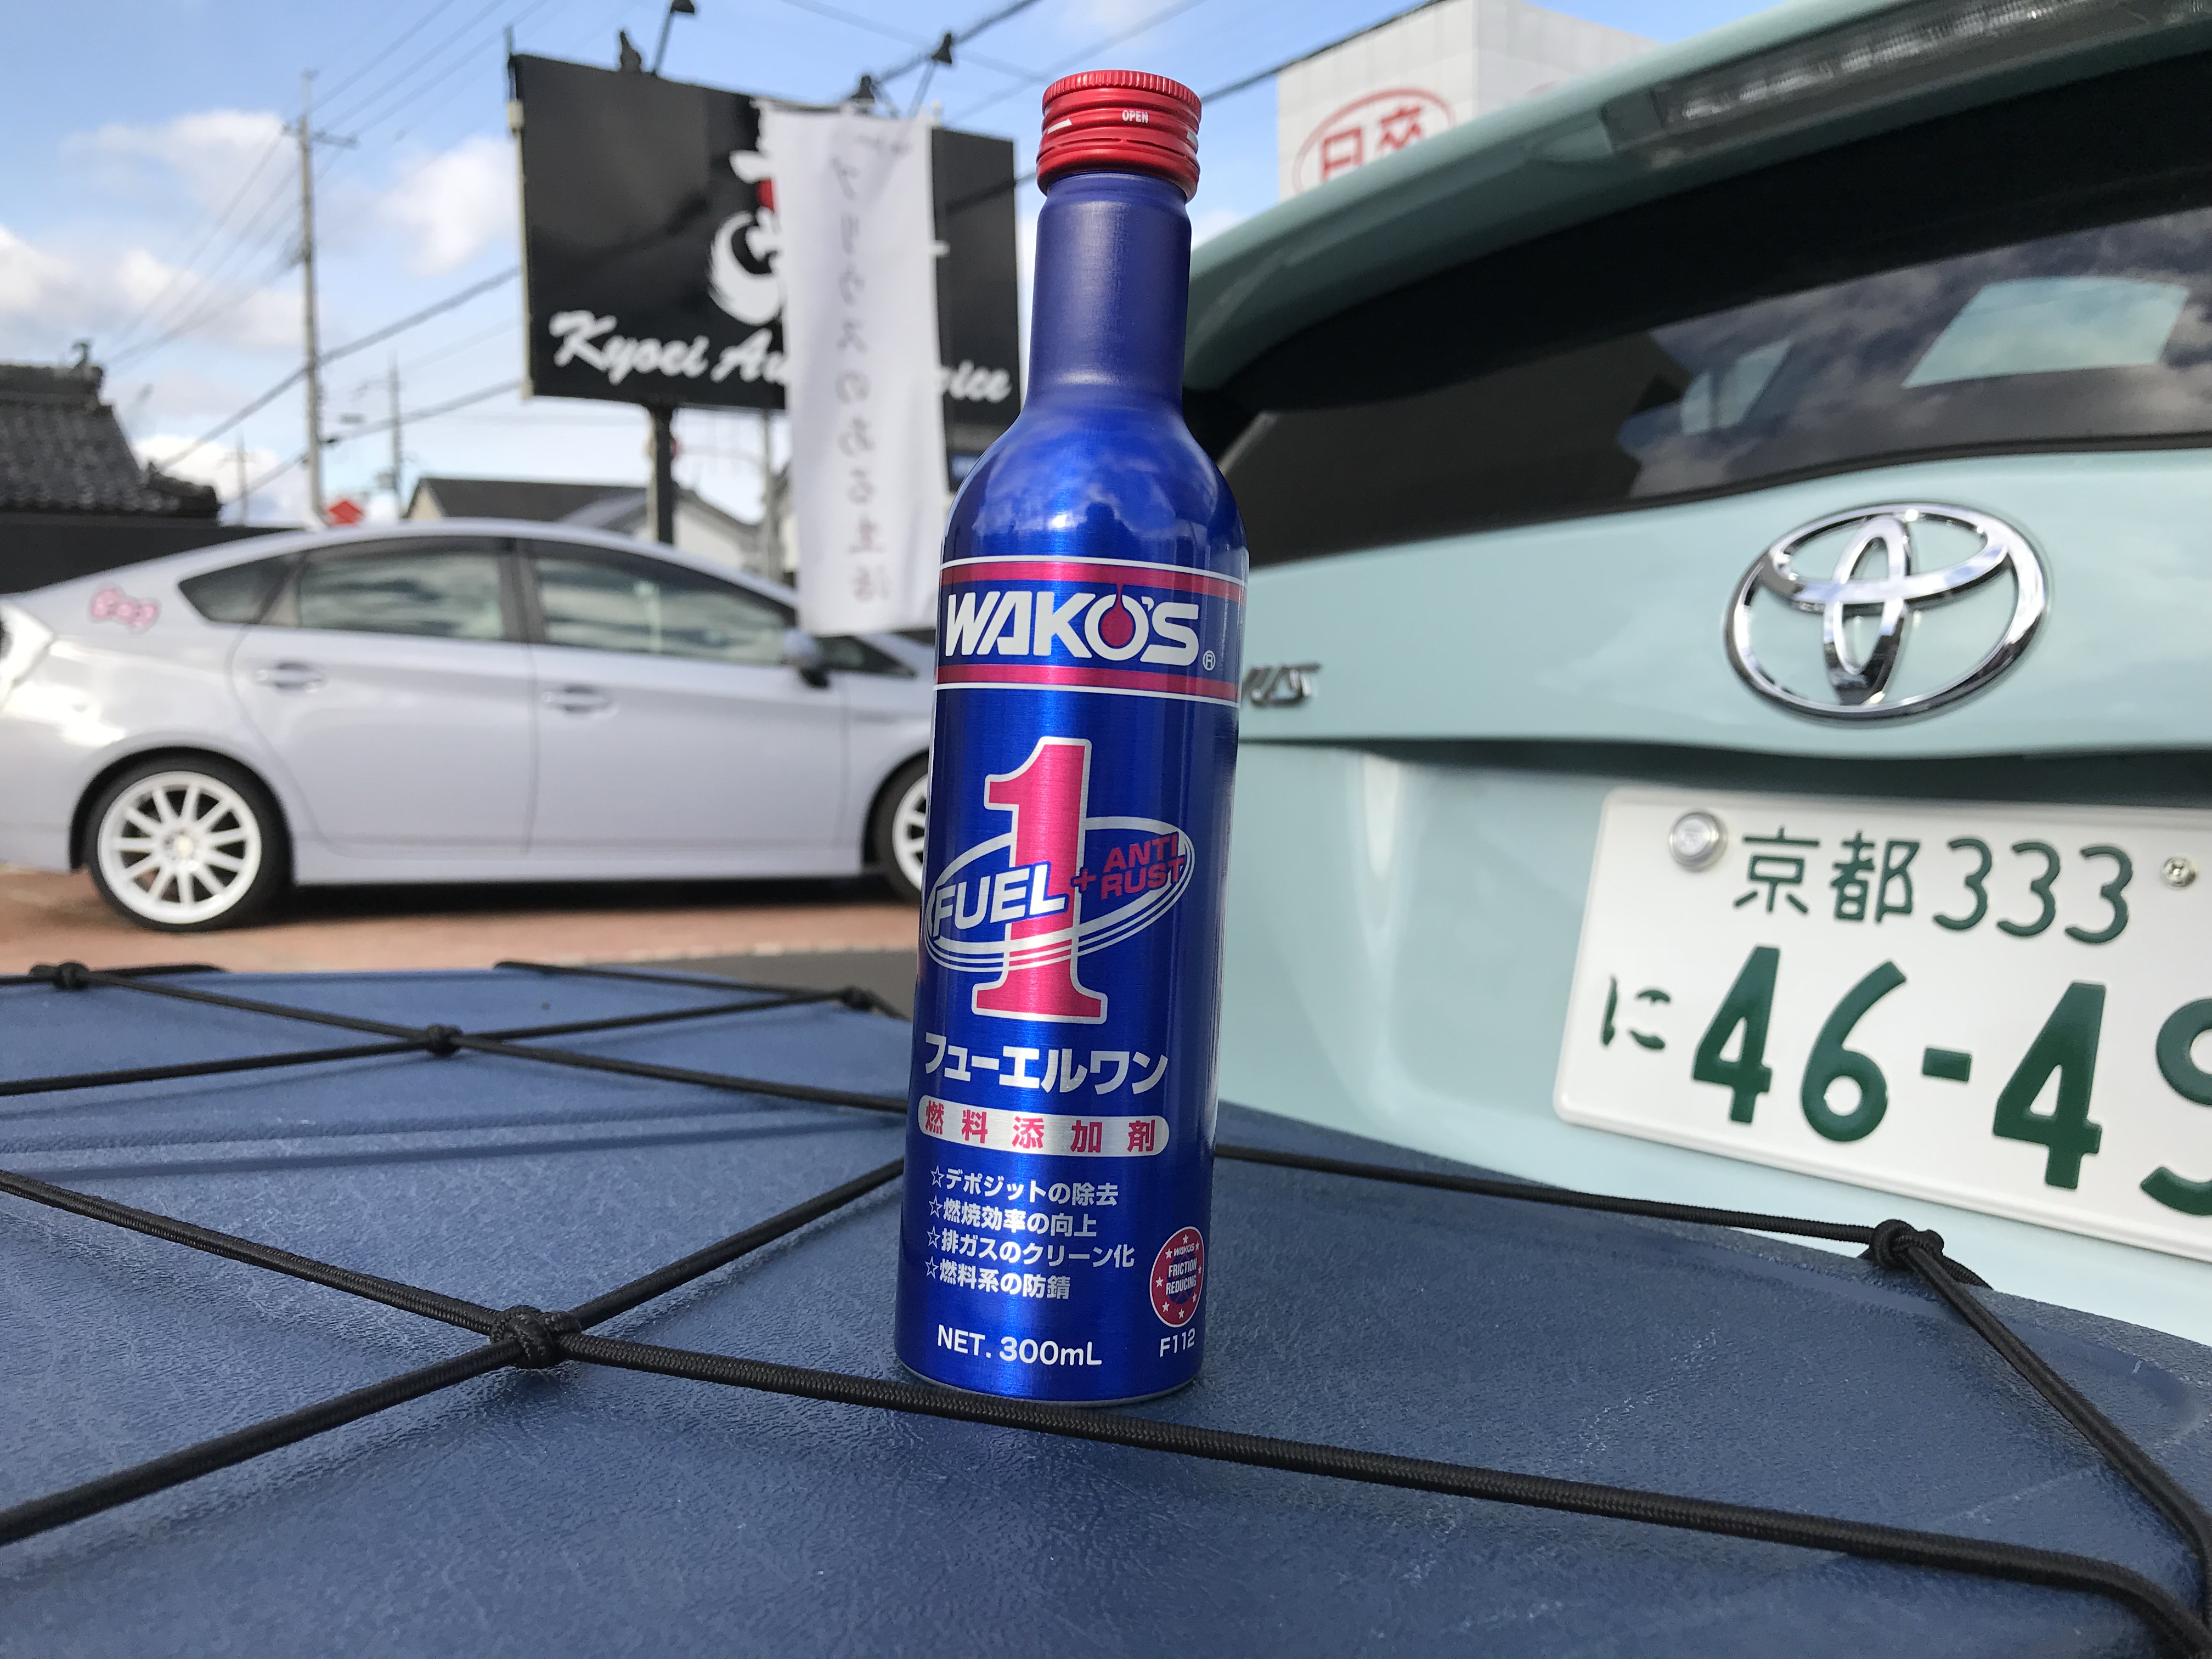 Wako S Fuel 1 ワコーズ フューエルワン ガソリン添加剤 Kyoei Japan 共栄ジャパン